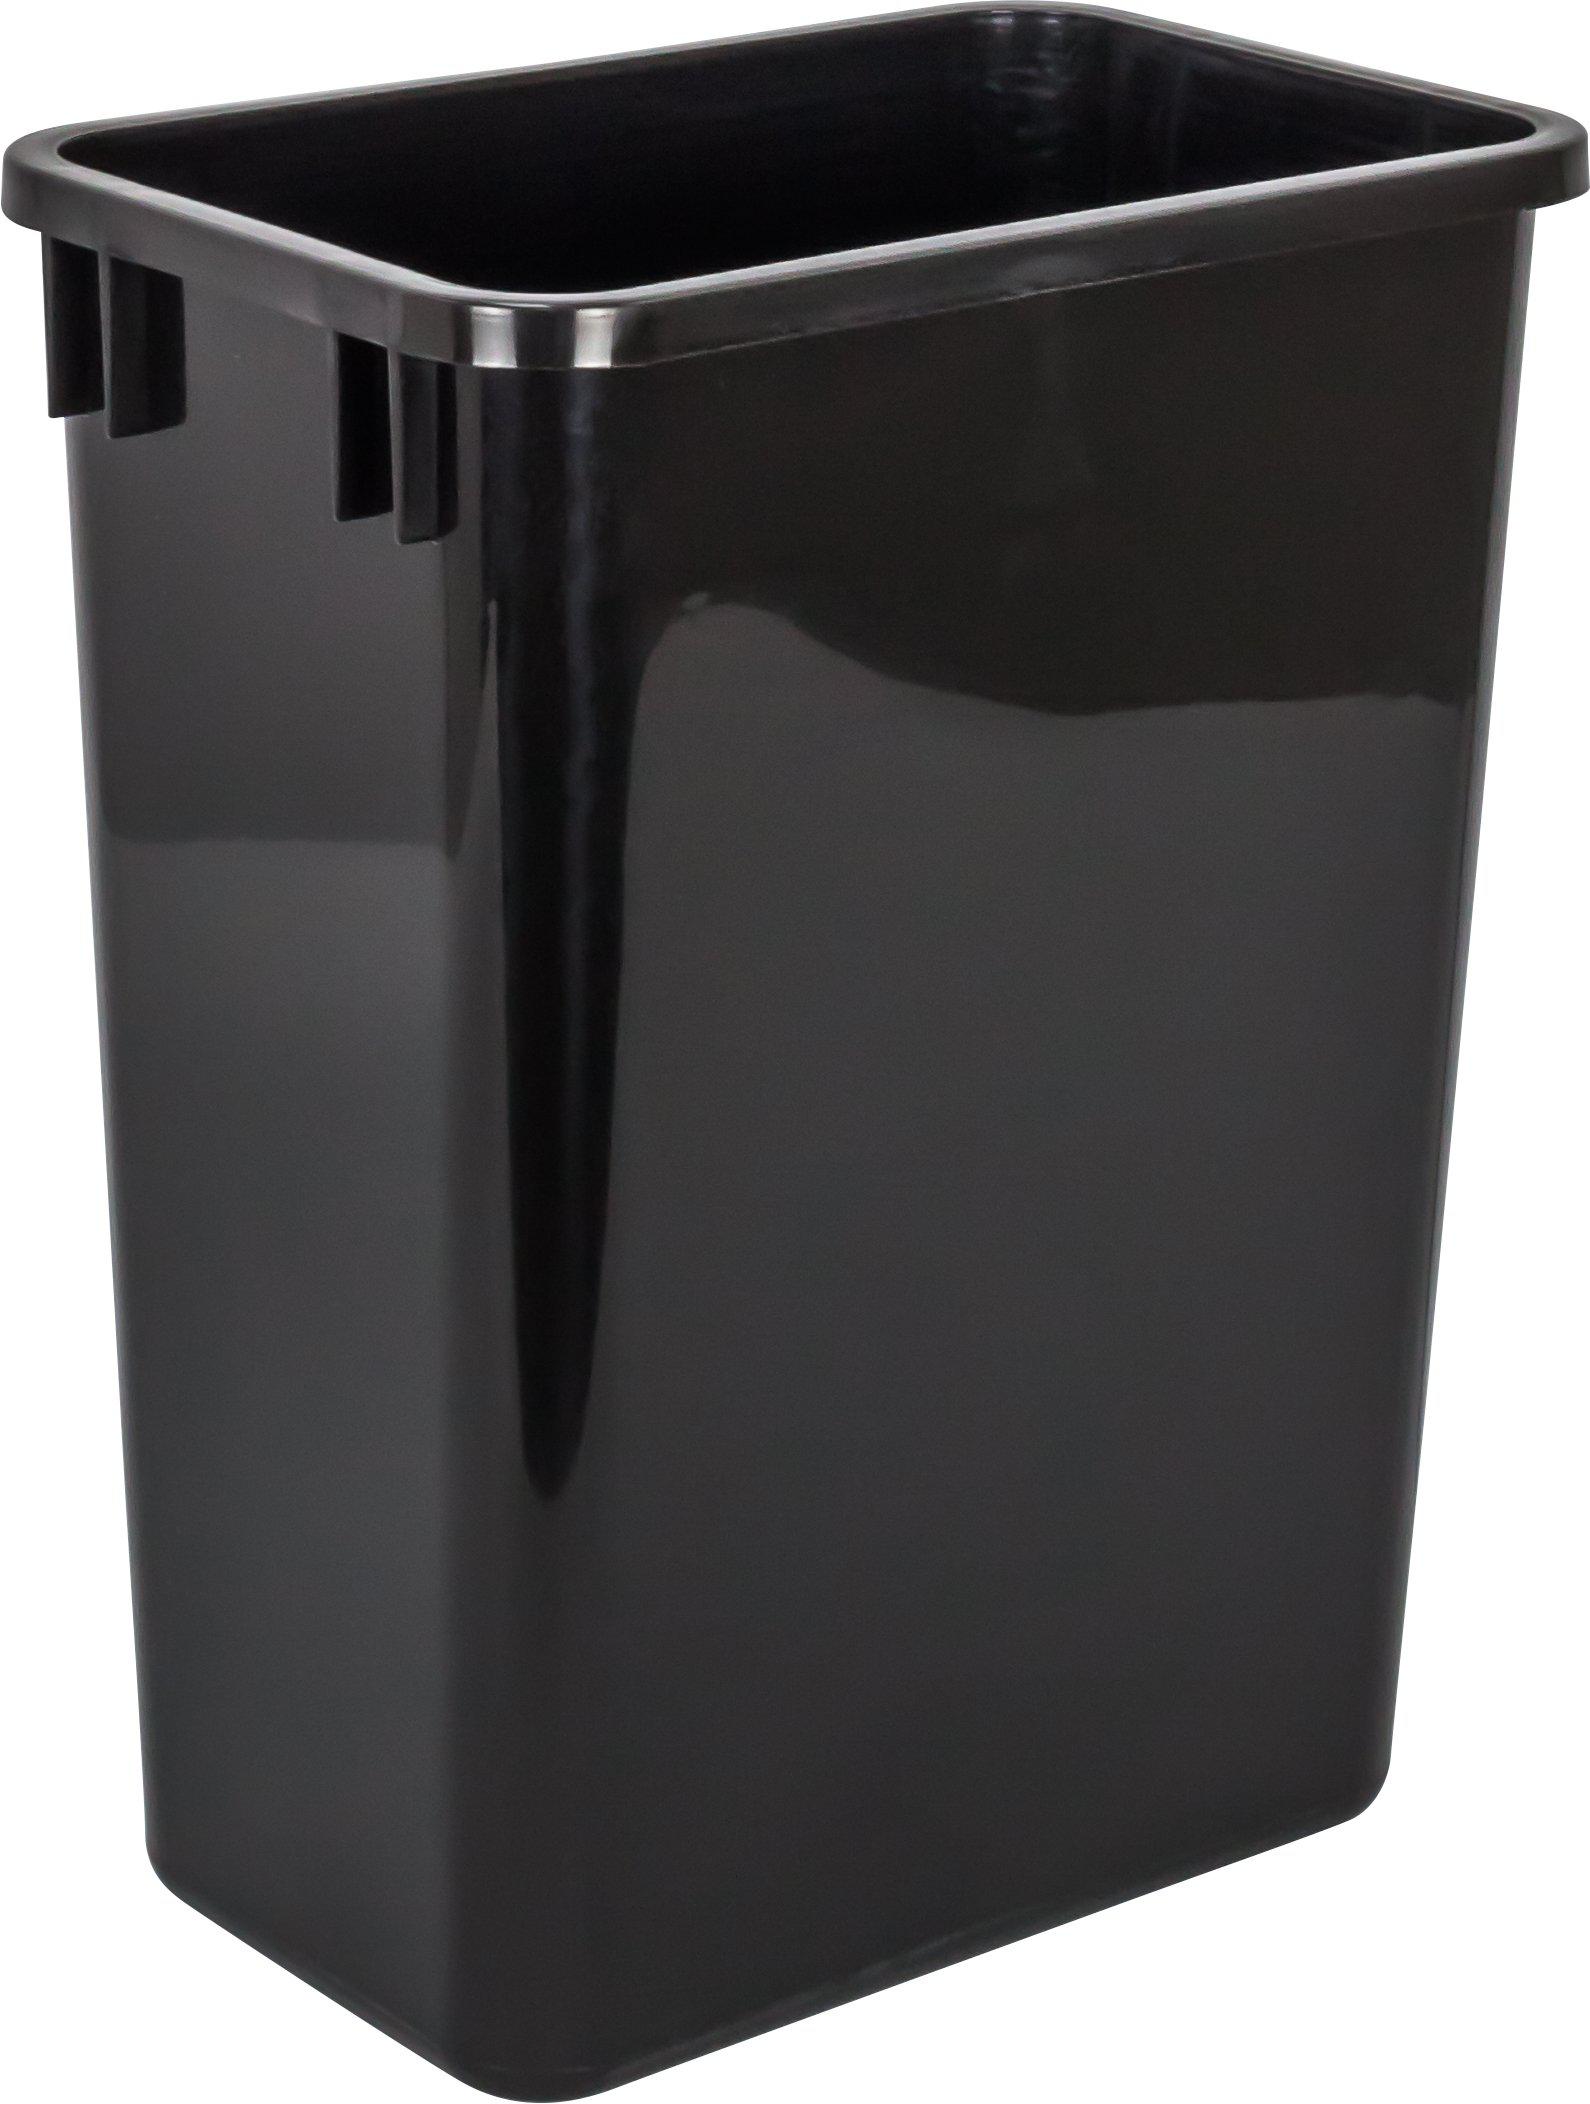 Hardware Resources Black 35-Quart Plastic Waste Container